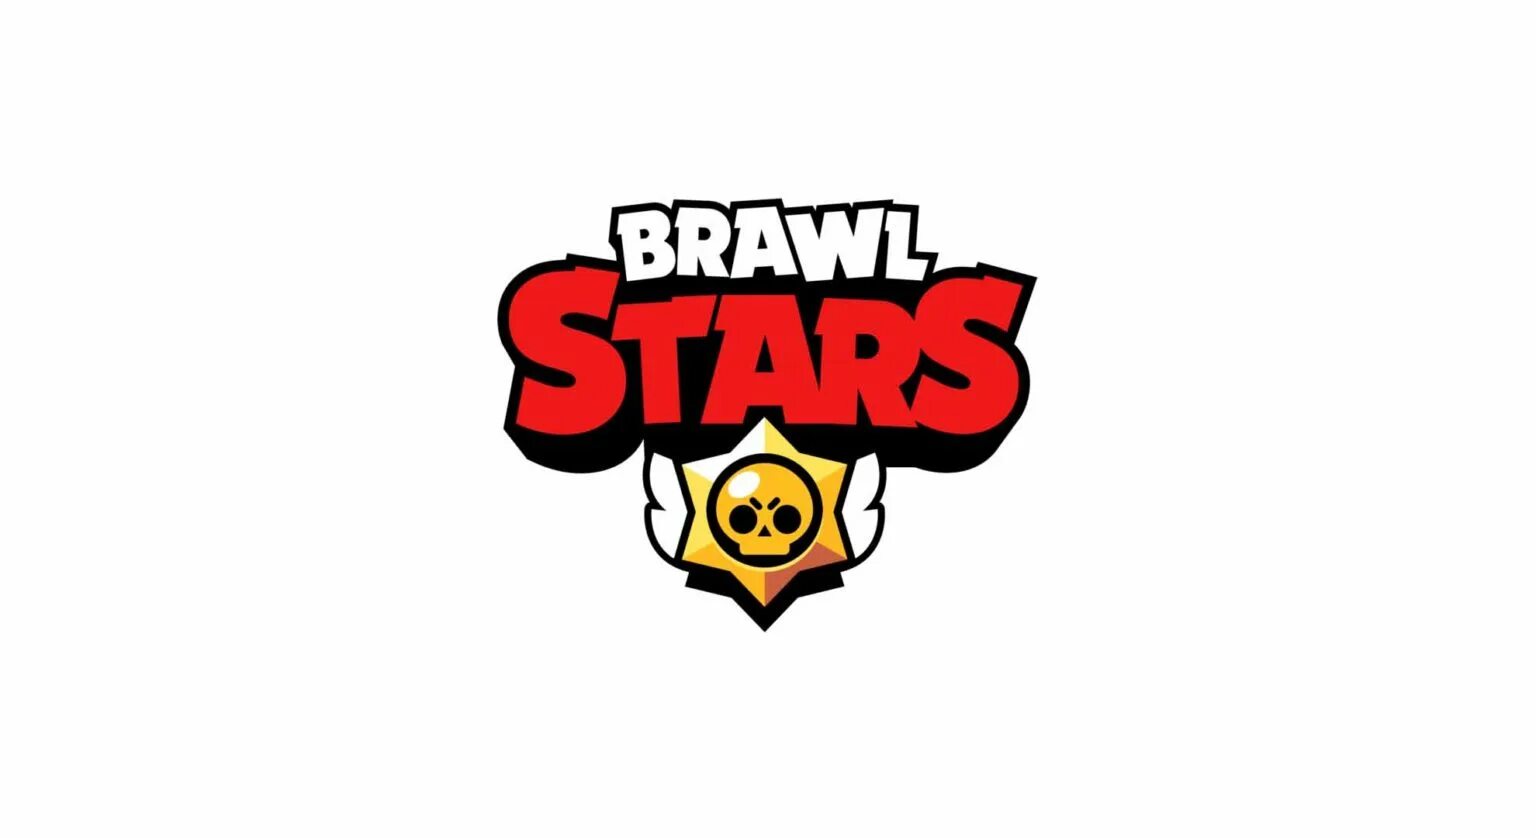 Браво старс эмблема. Brawl Stars логотип. Brawl Stars надпись. БРАВЛ логотип без фона. Бравл старс логотип